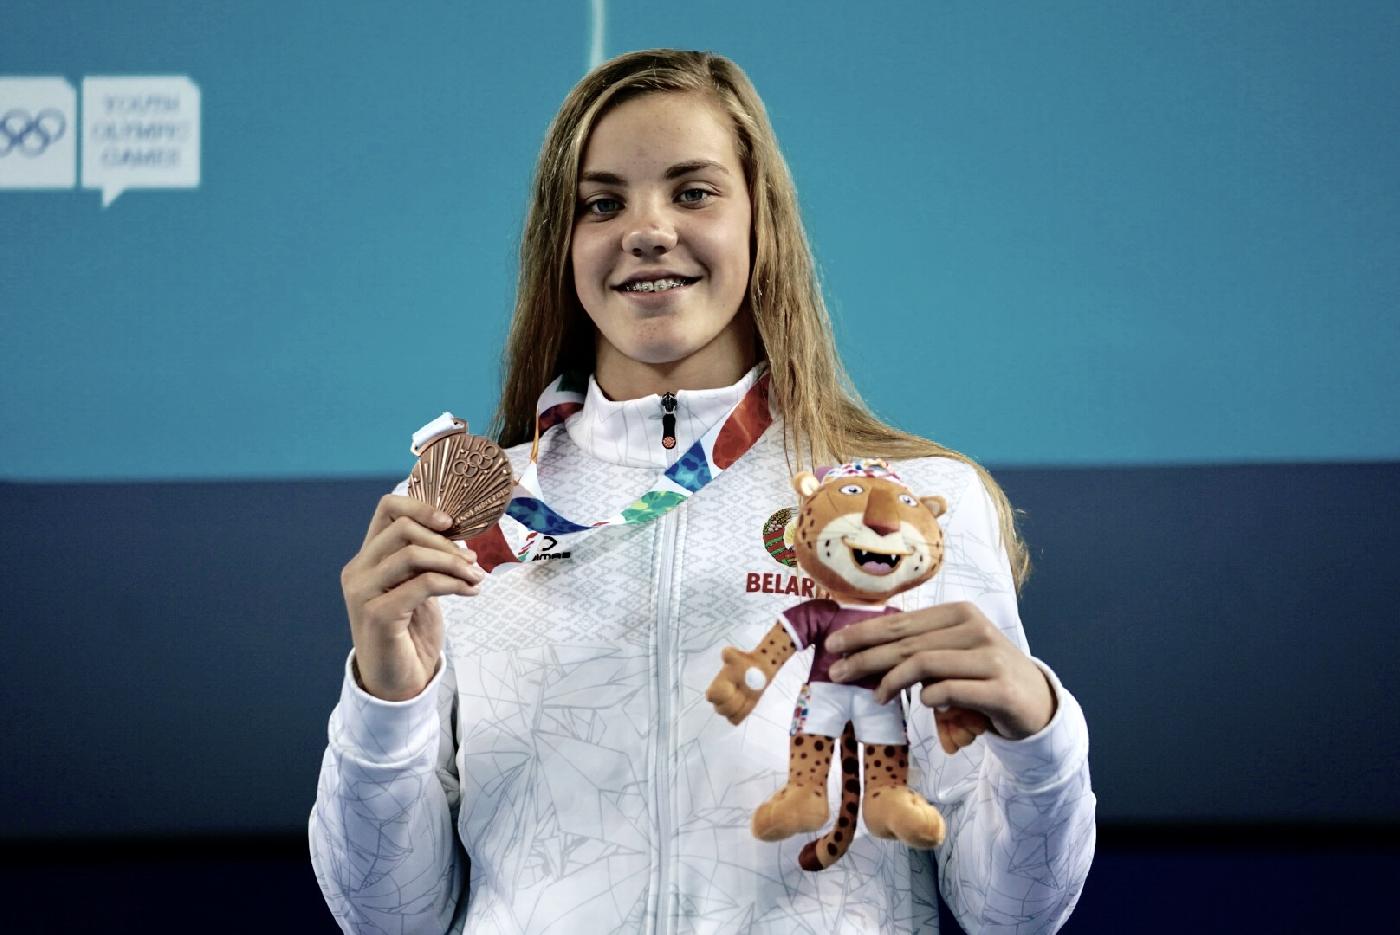 YOG 2018. Anastasiya Shkurdai won bronze medal